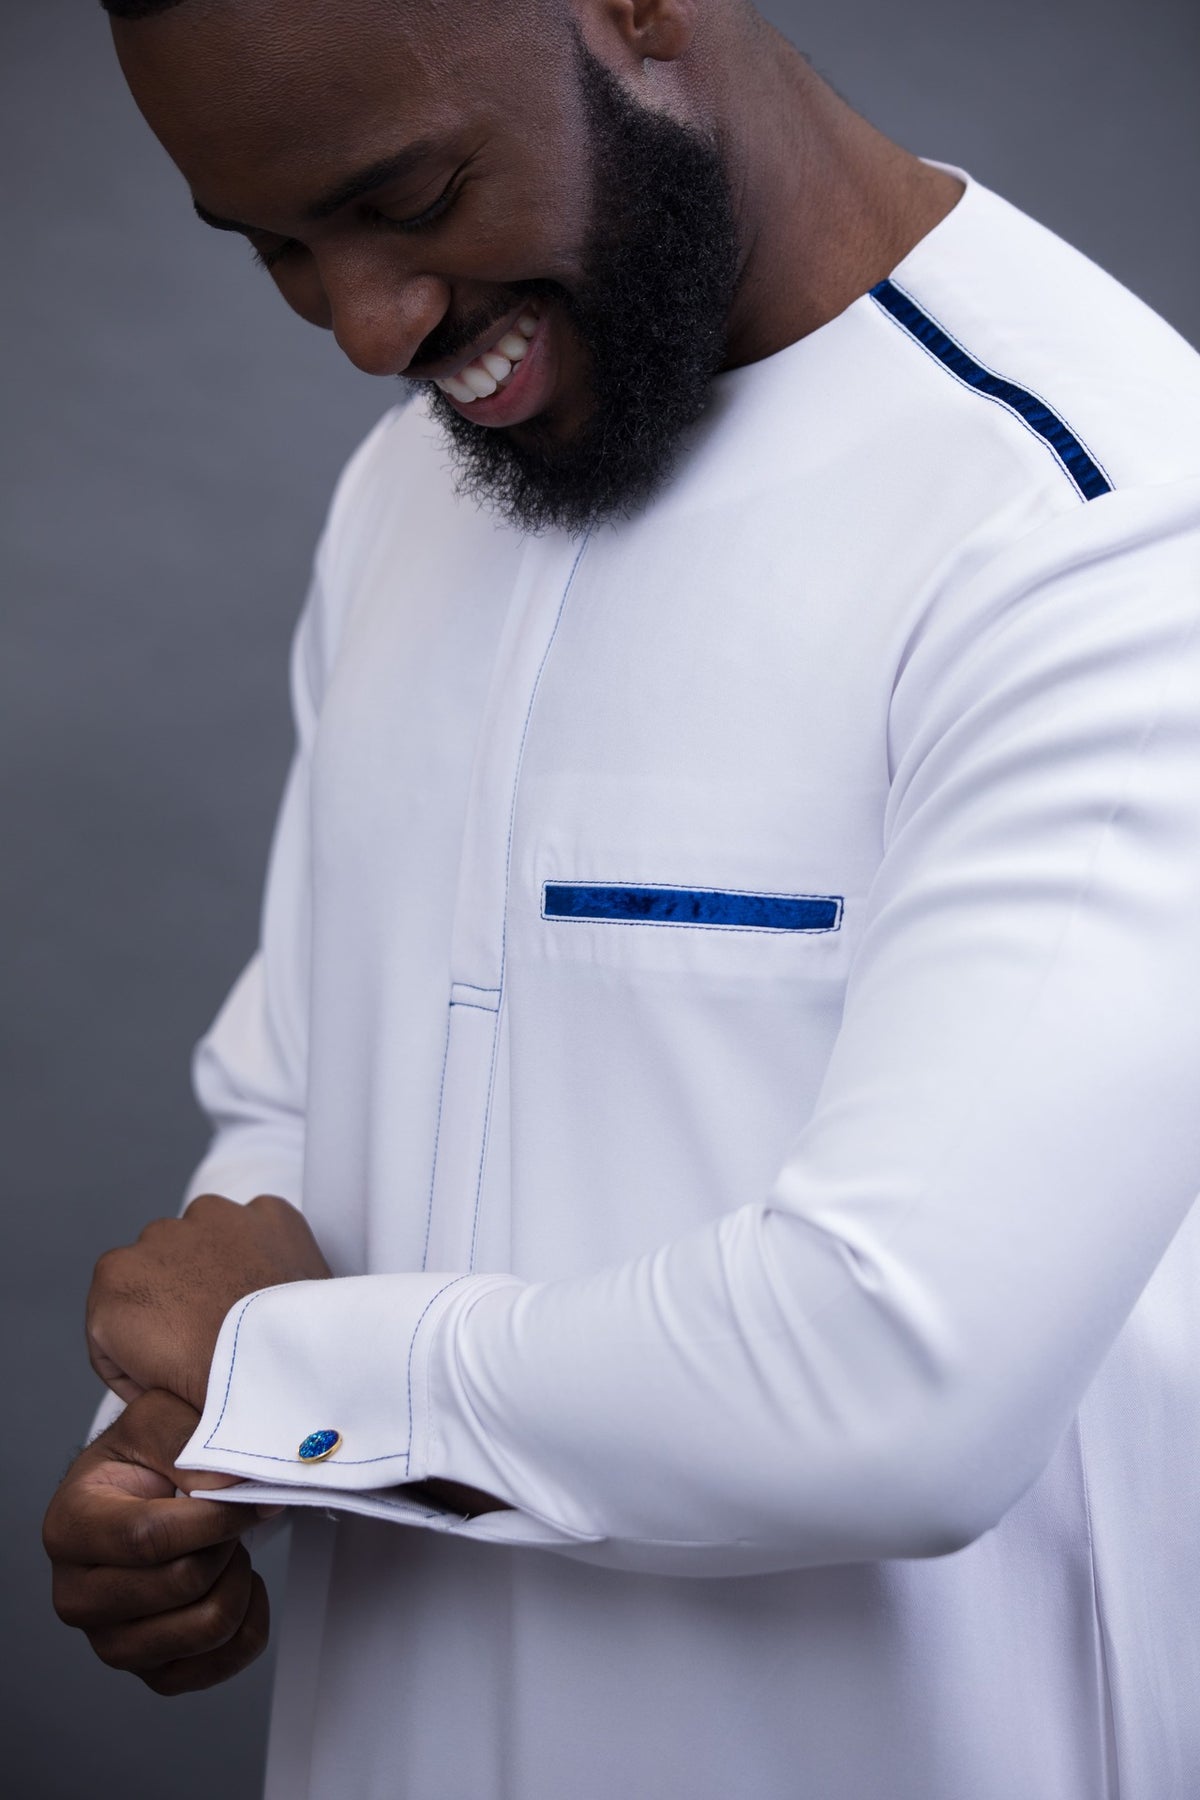 Qamis (Kamis)  Vêtement homme musulman par excellence - Alif Store